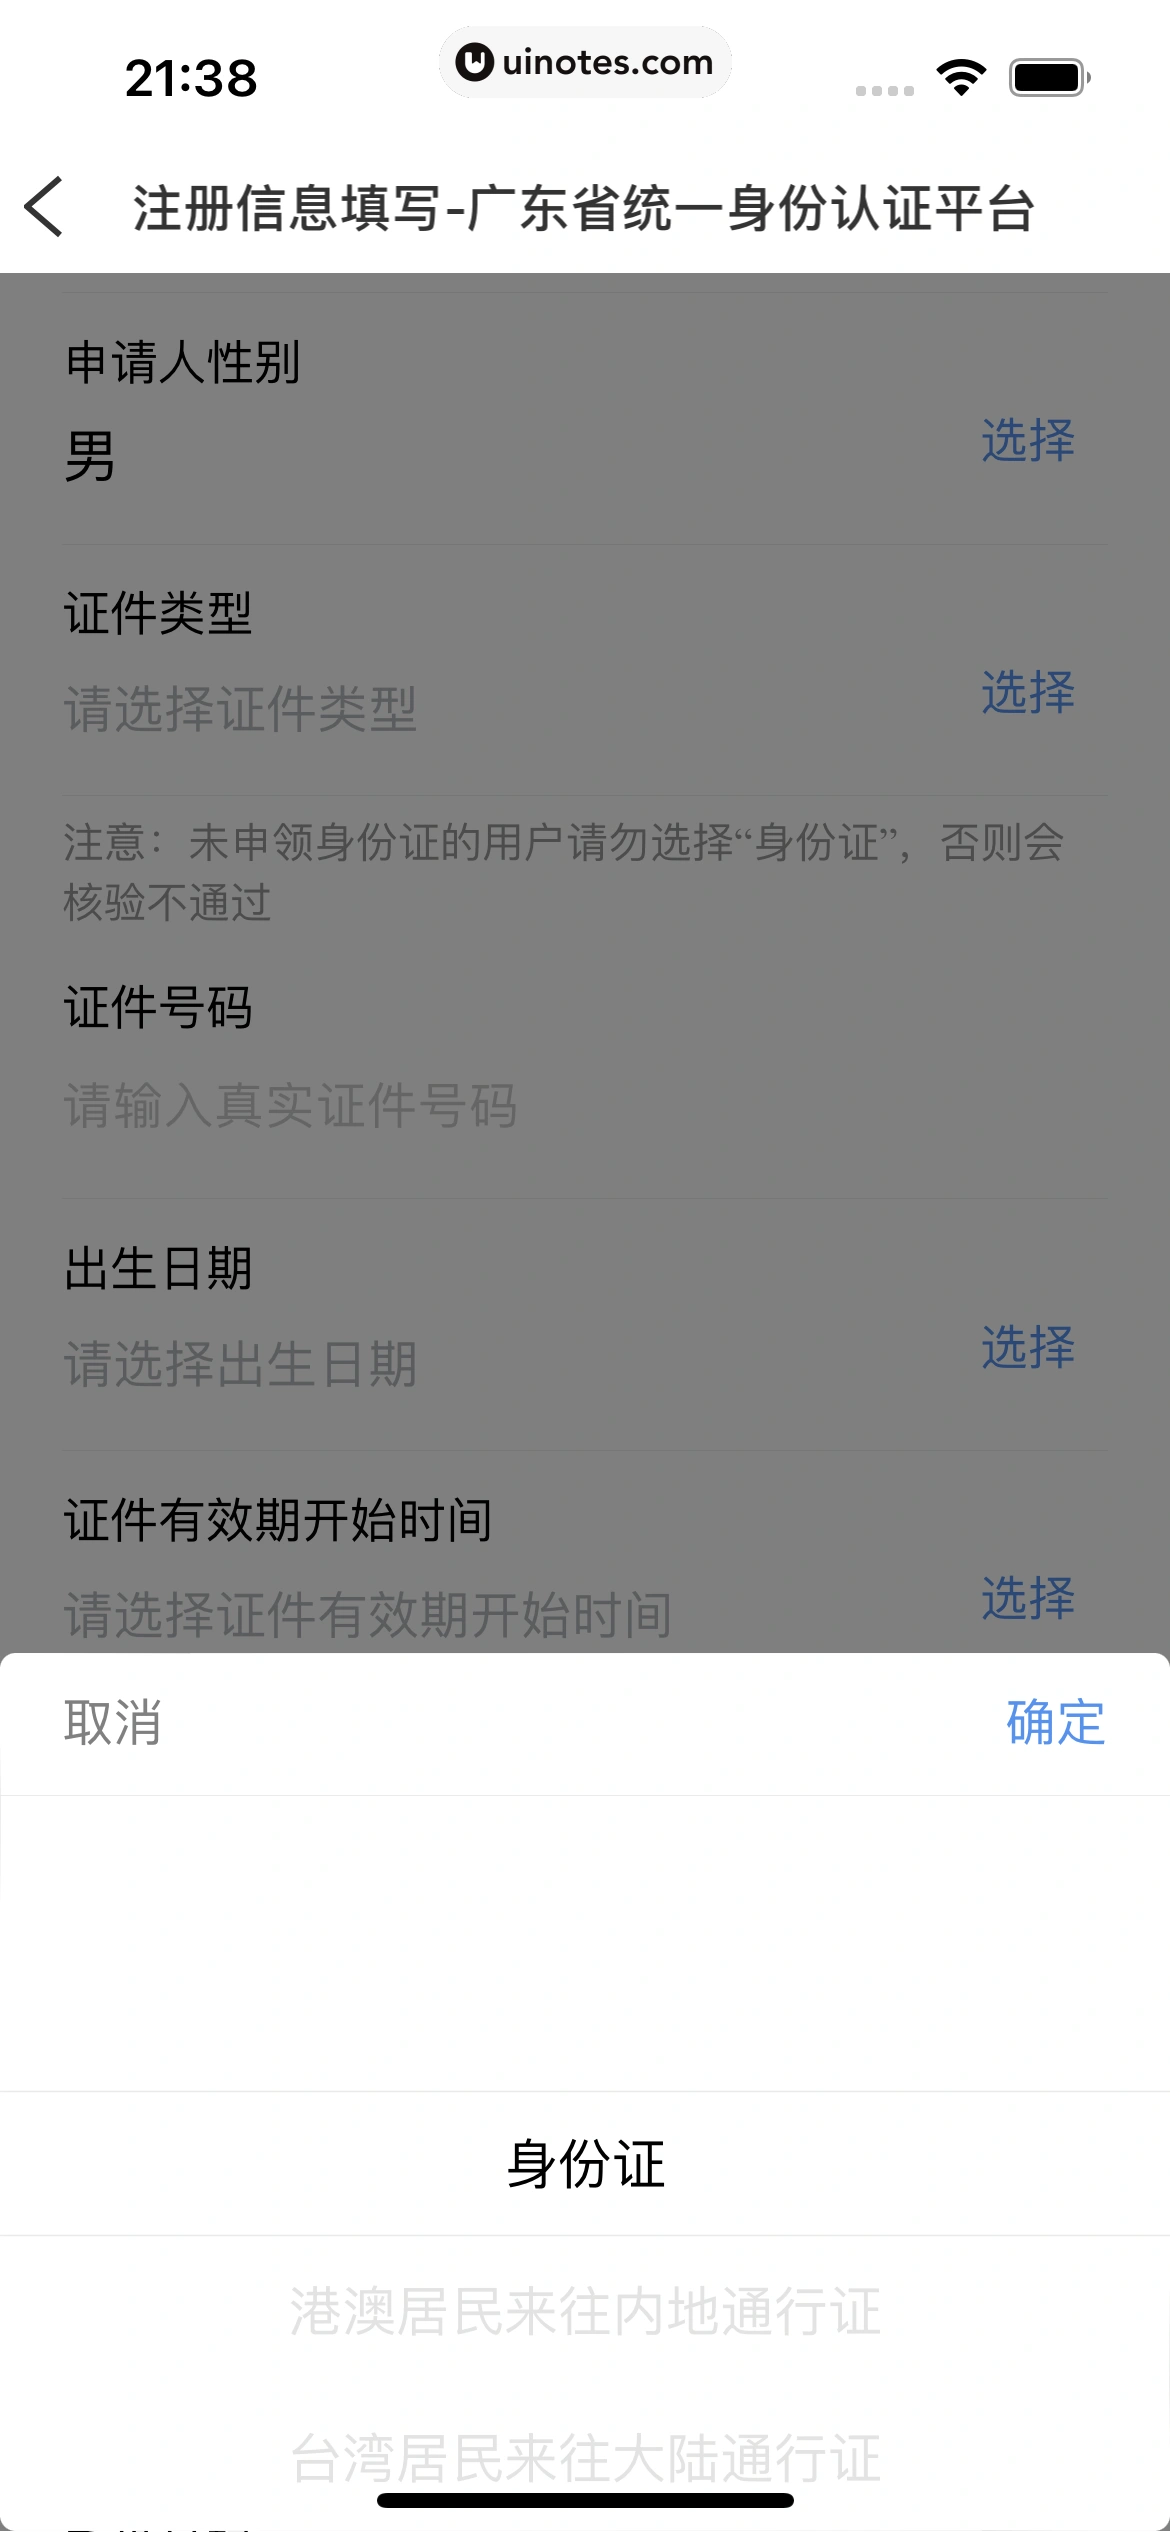 粤省事 App 截图 025 - UI Notes